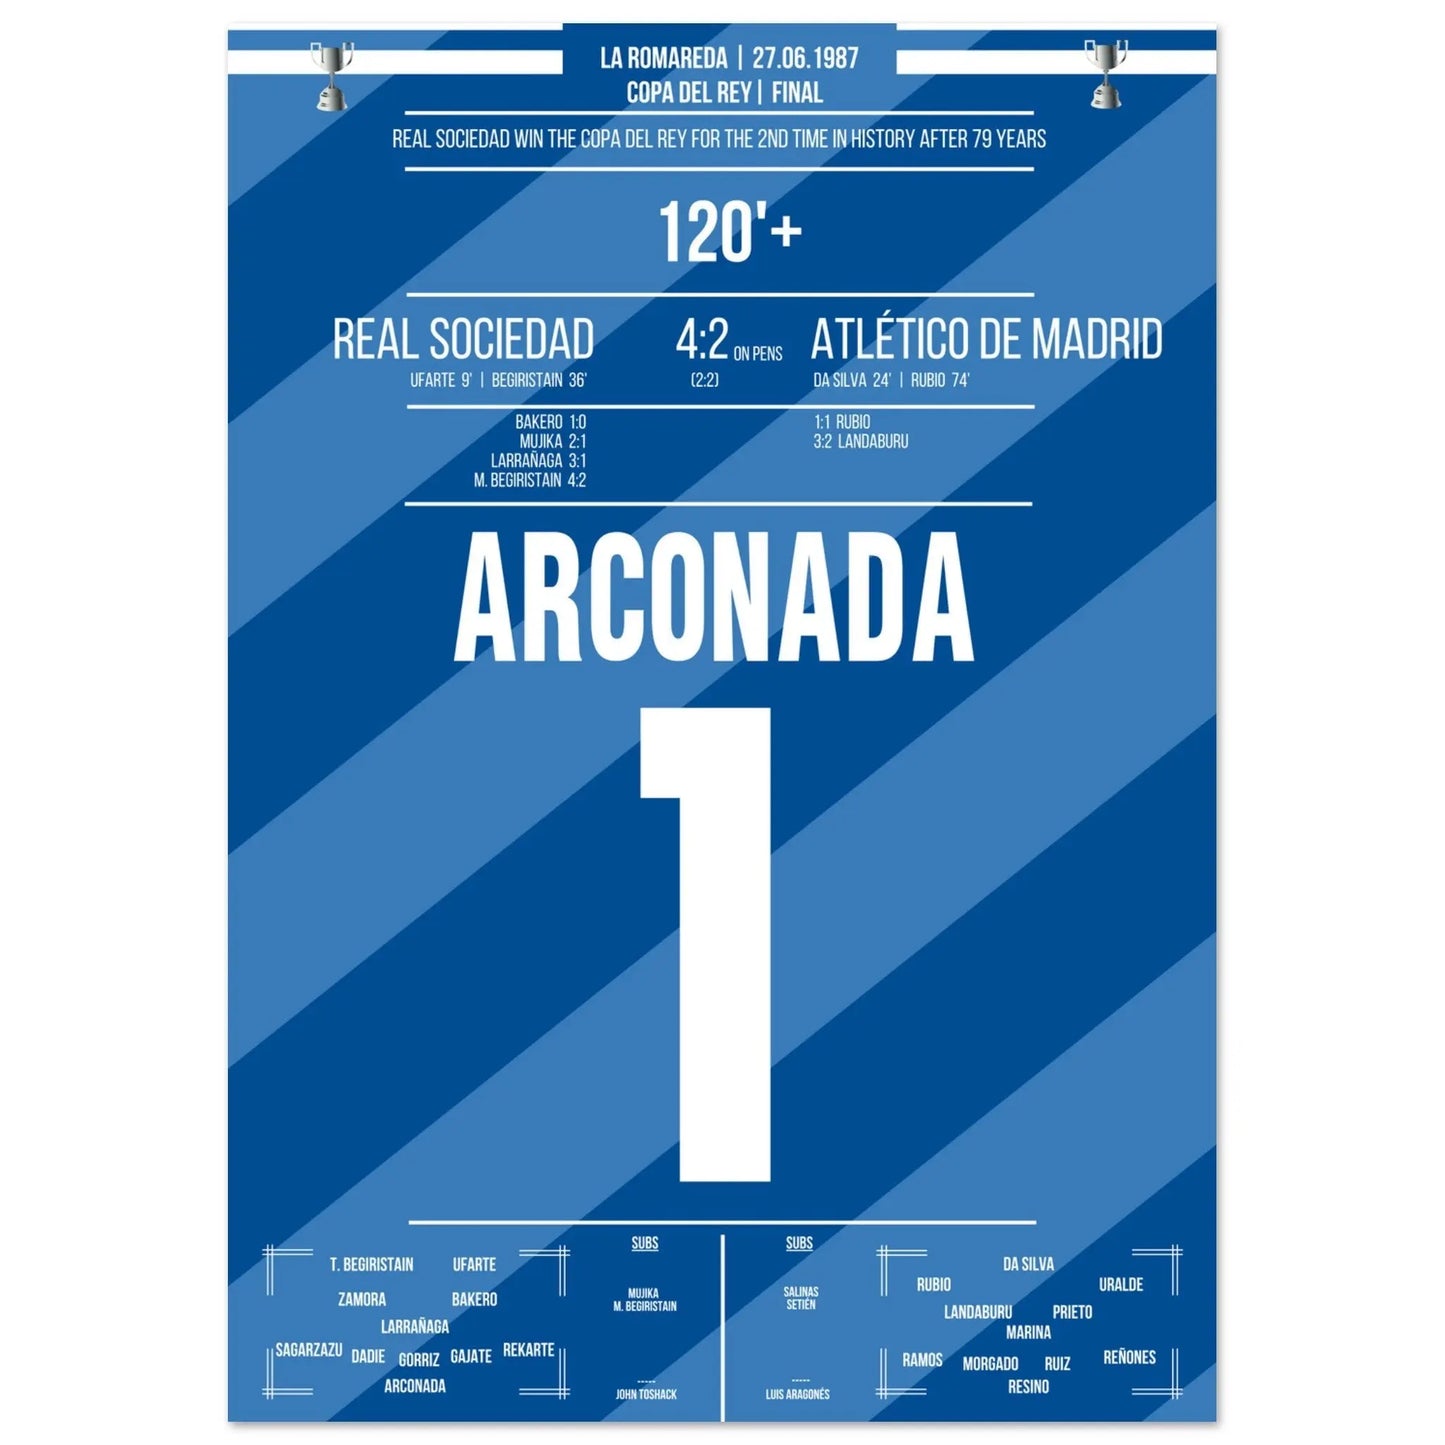 Luis Arconada detiene el penalti decisivo y corona a la Real Sociedad como campeona de la Copa del Rey de 1987